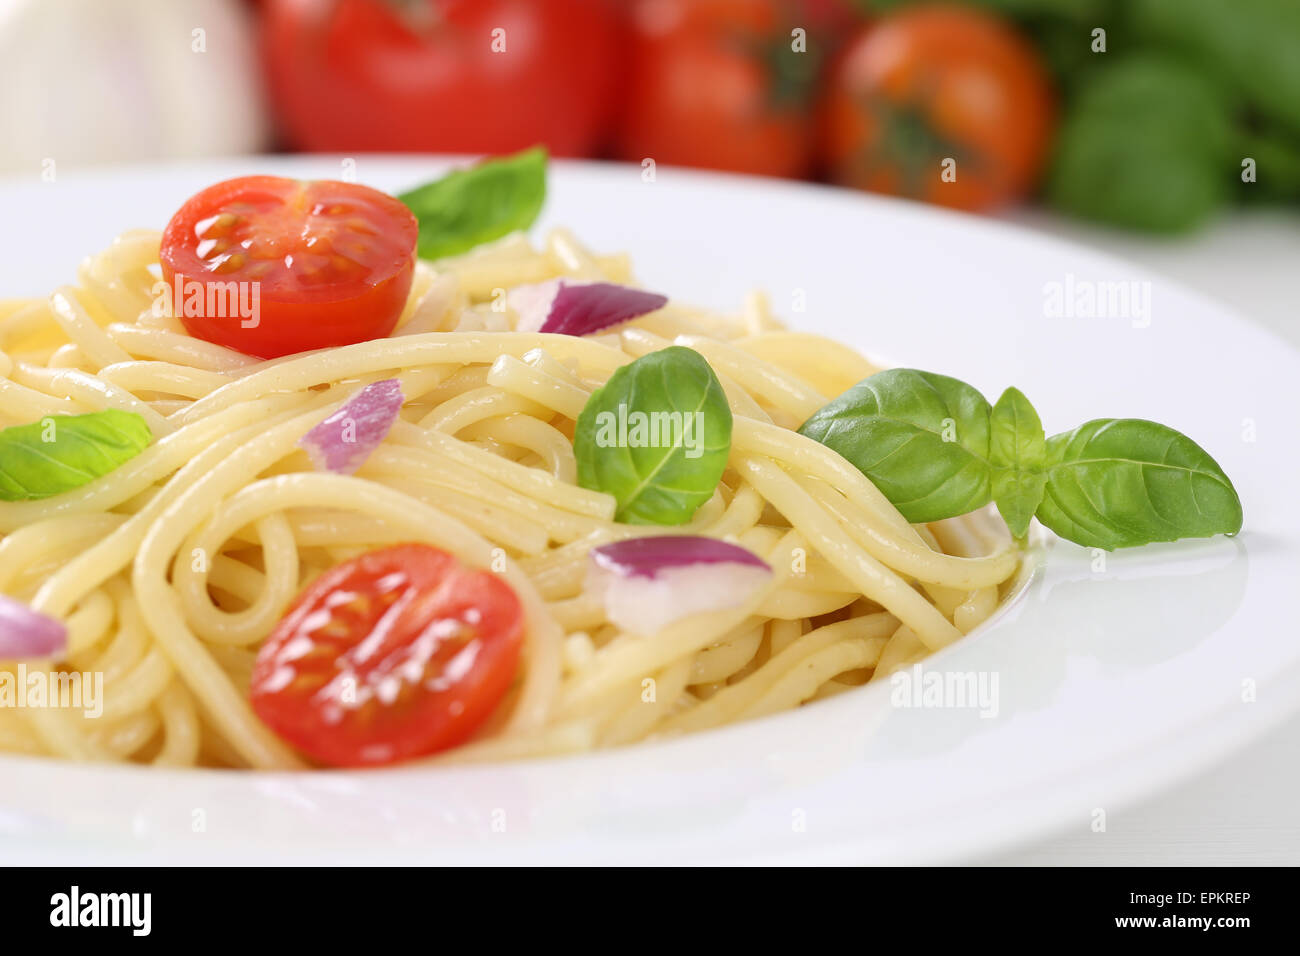 Spaghetti Nudeln Pasta mit Tomaten und Basilikum auf Teller Stock Photo ...